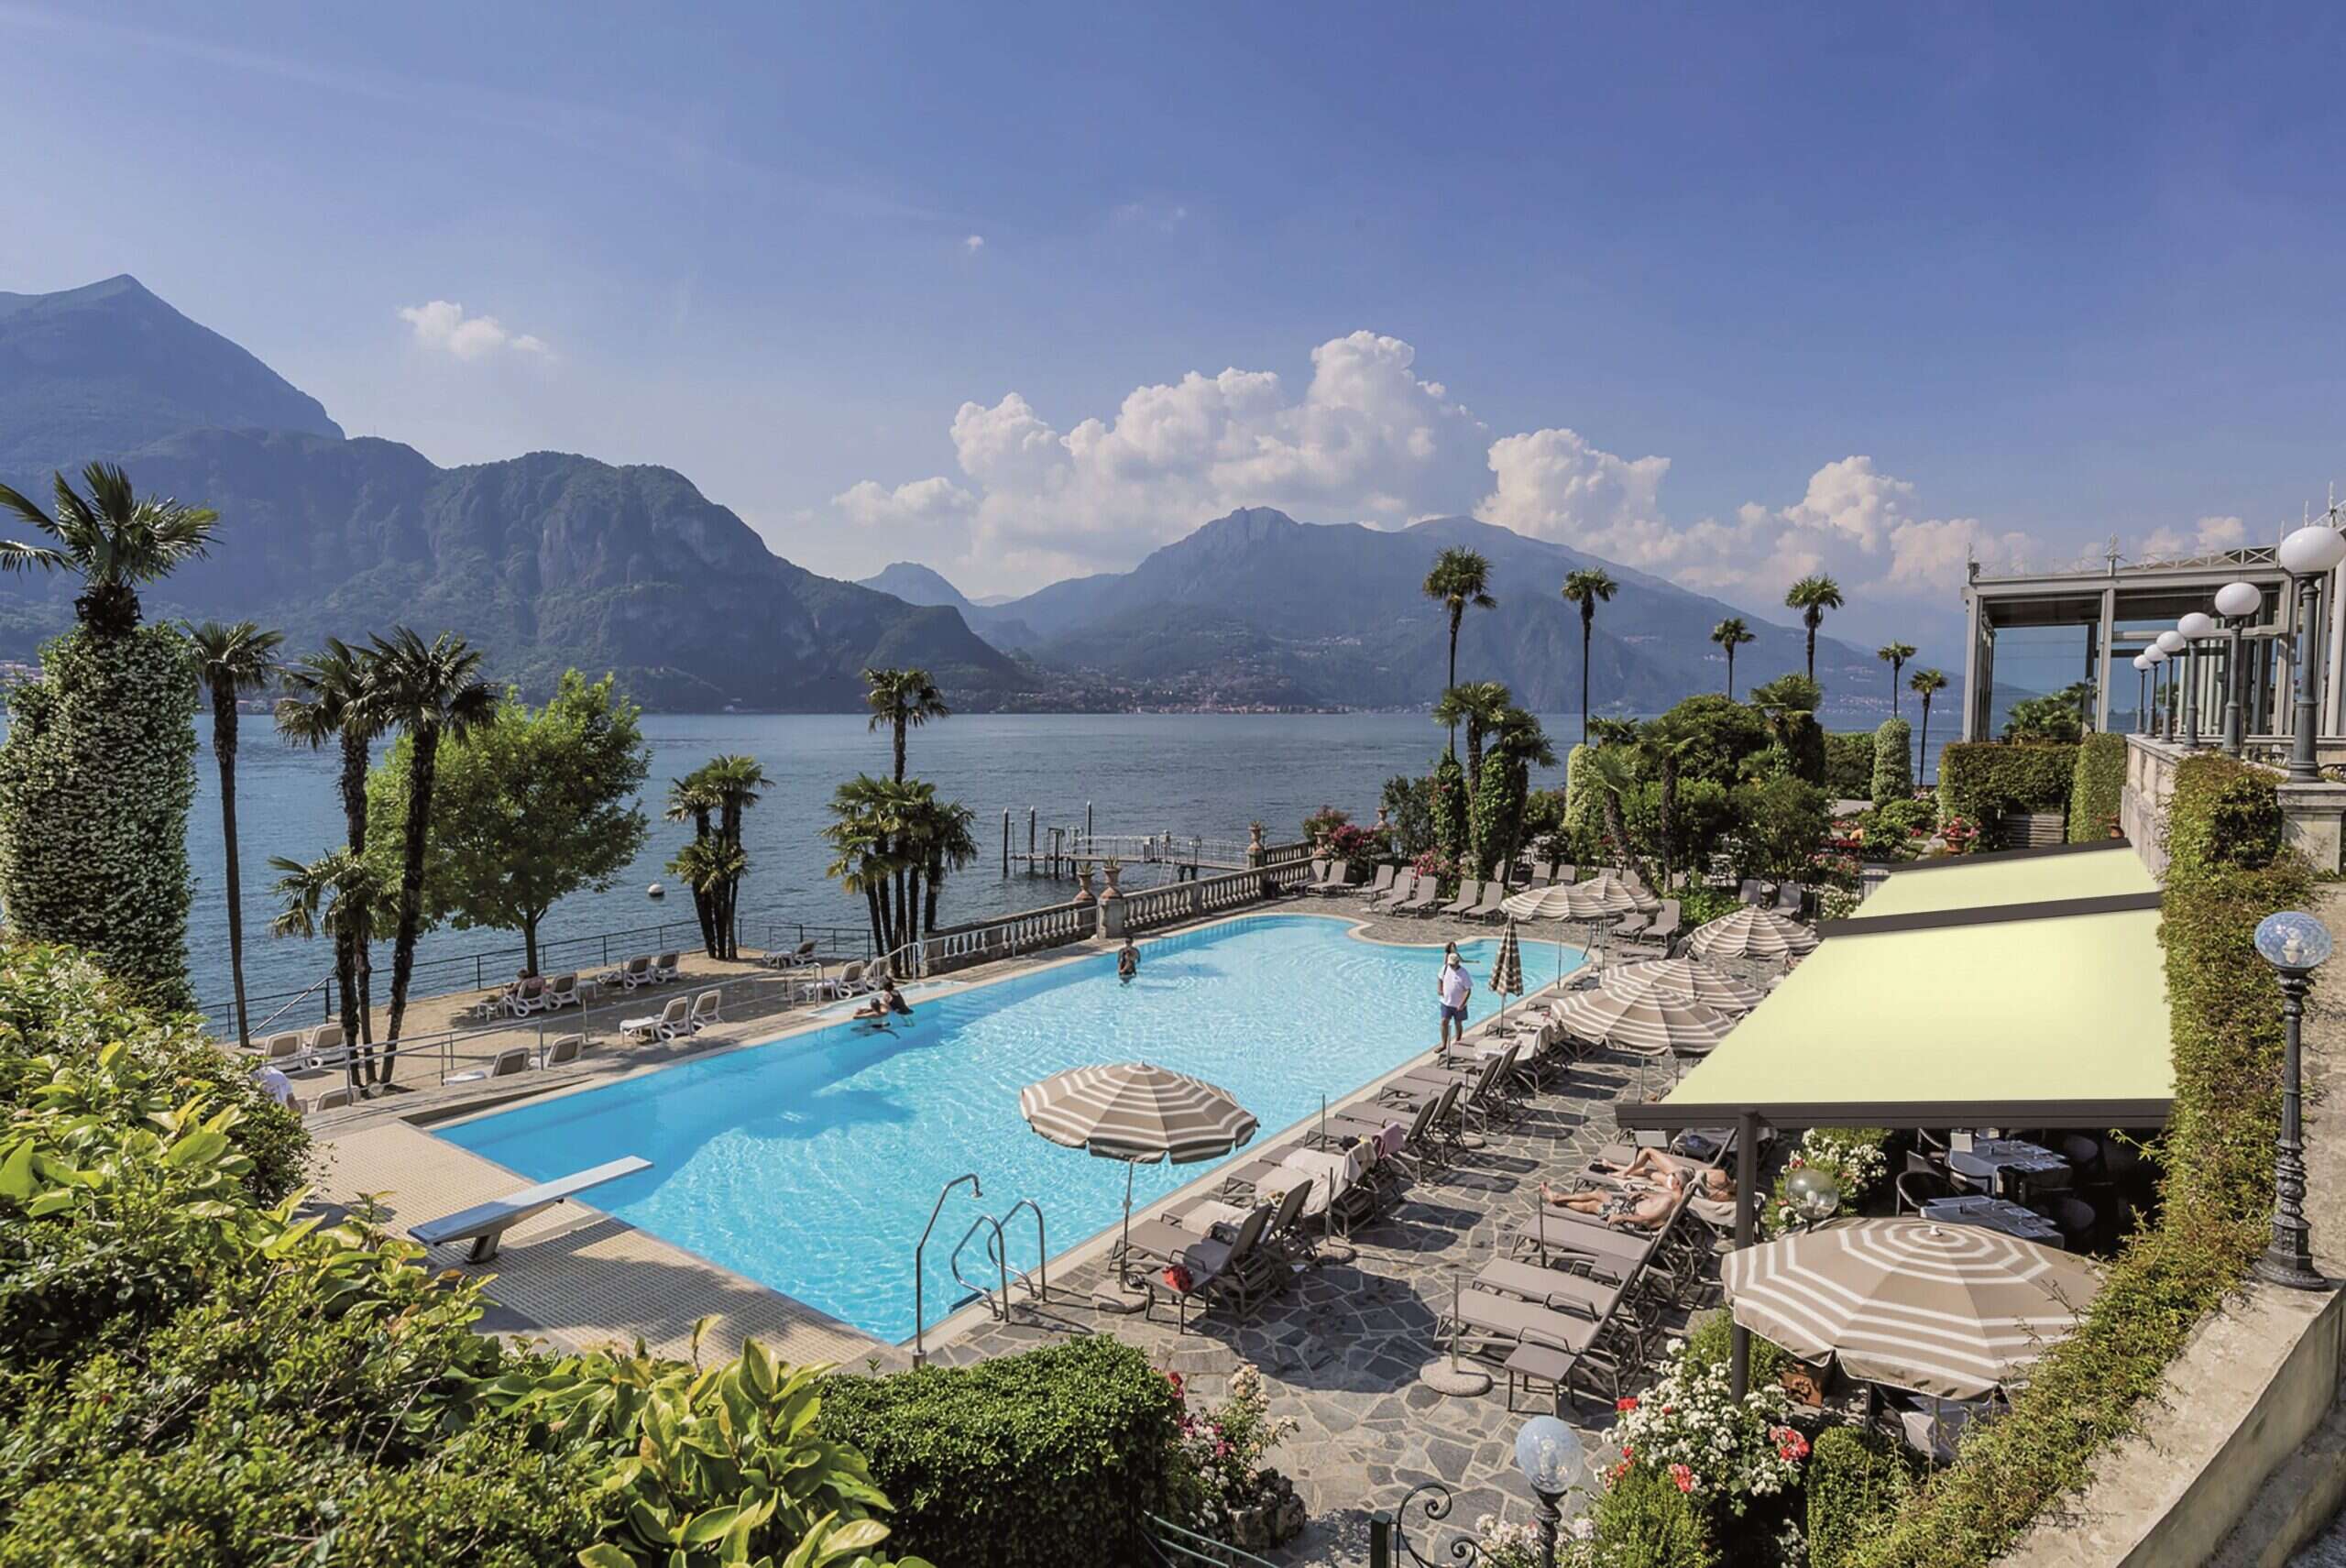 Grand Hotel Villa Serbelloni pool 